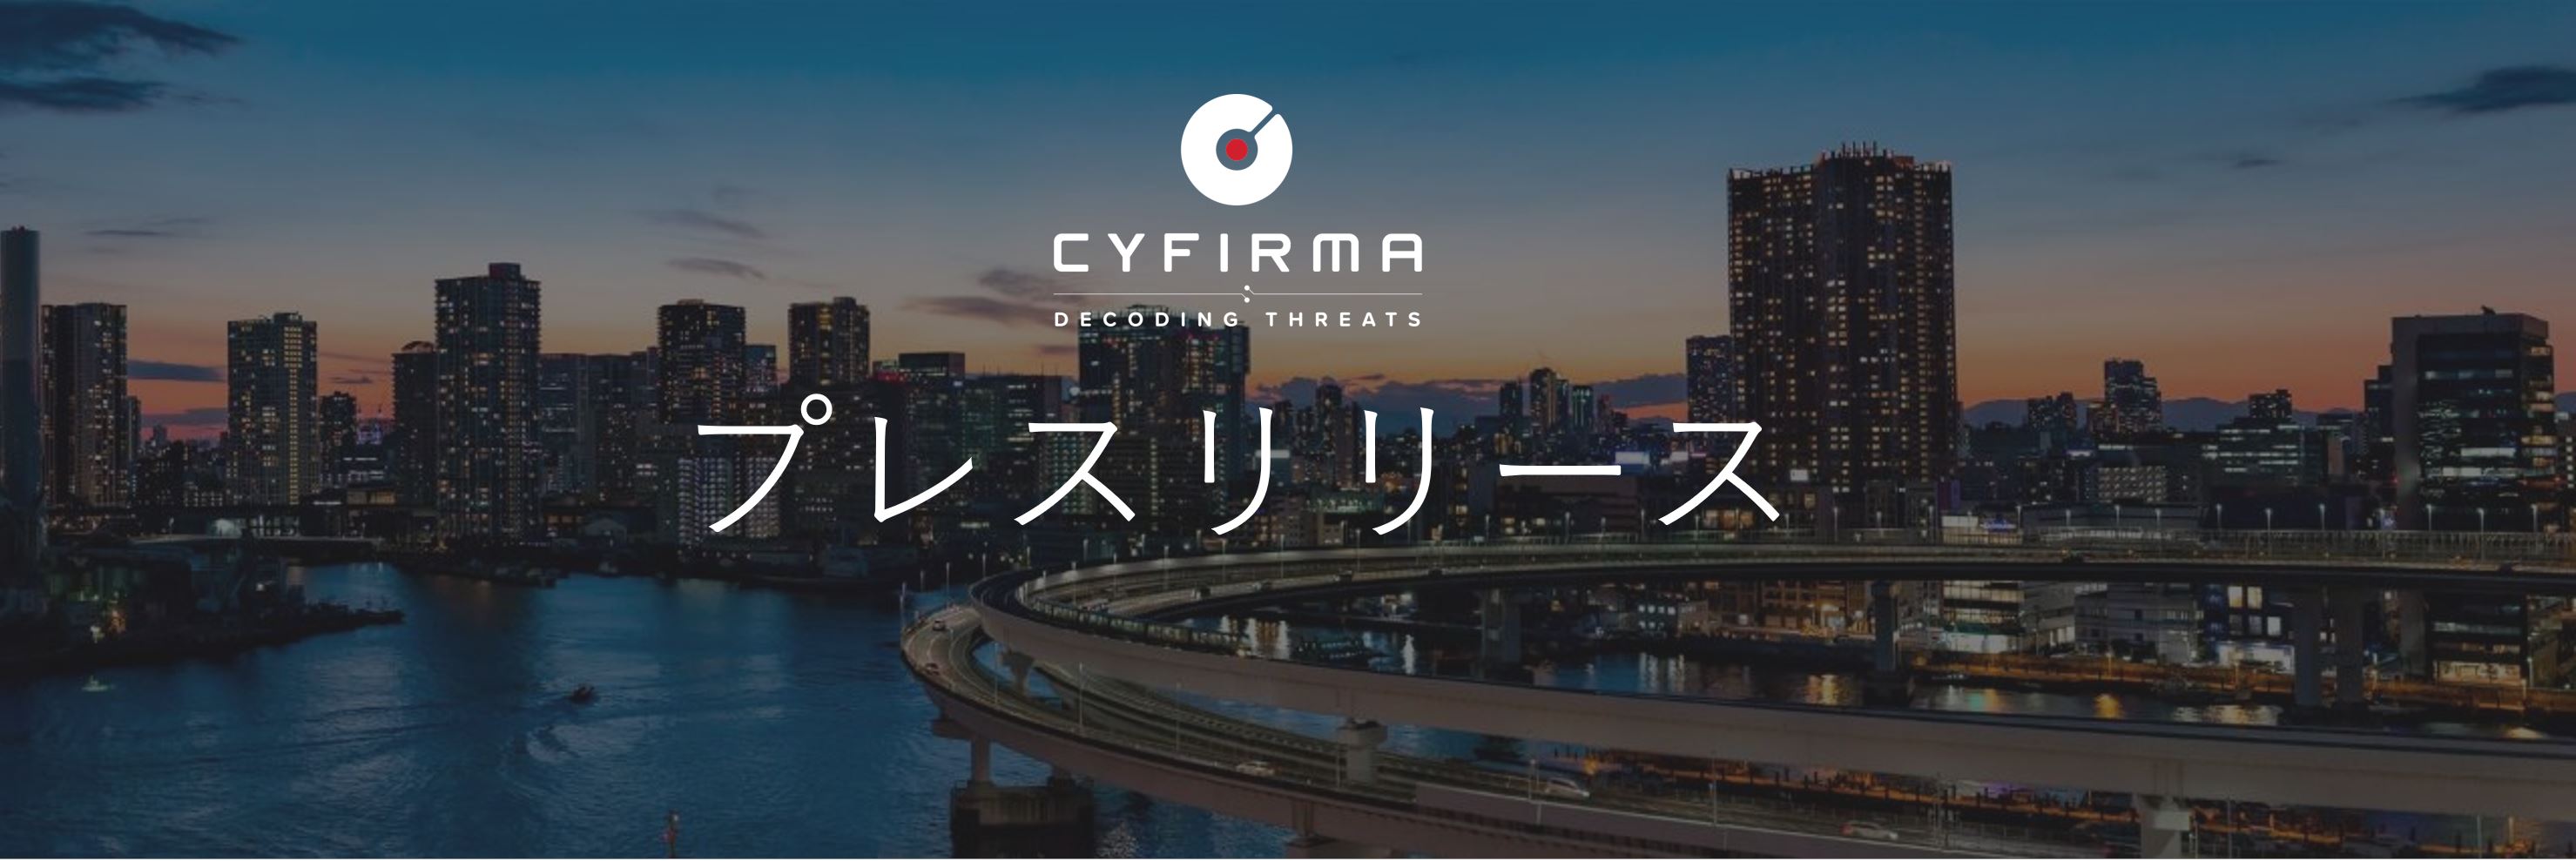 CYFIRMA、サイバー脅威情勢の可視化と サイバーセキュリティ強化を実現するプラットフォーム「DeCYFIR」を三菱自動車に提供